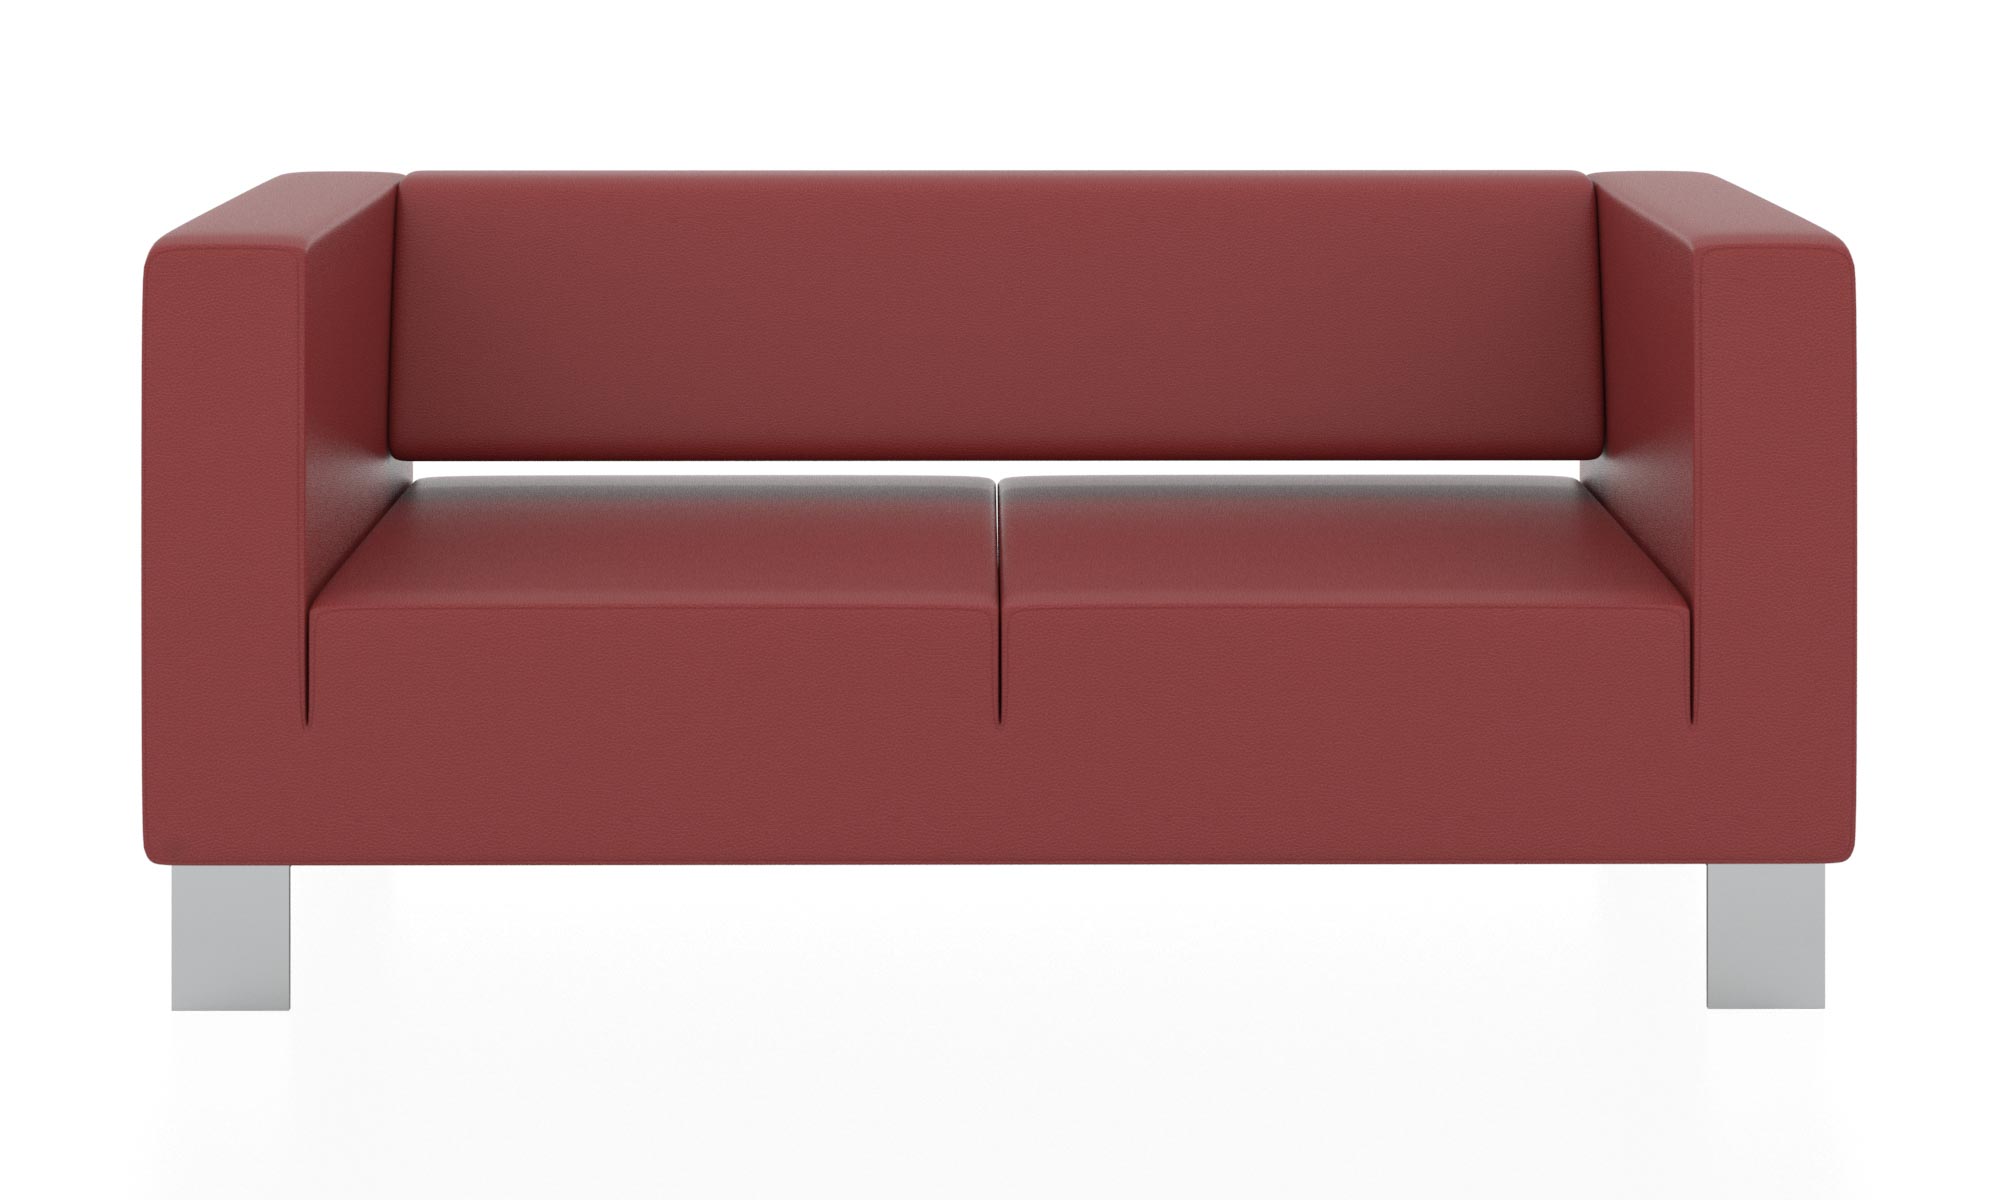 Современный двухместный диван с обивкой из кожзама. Цвет красный(euroline 960).